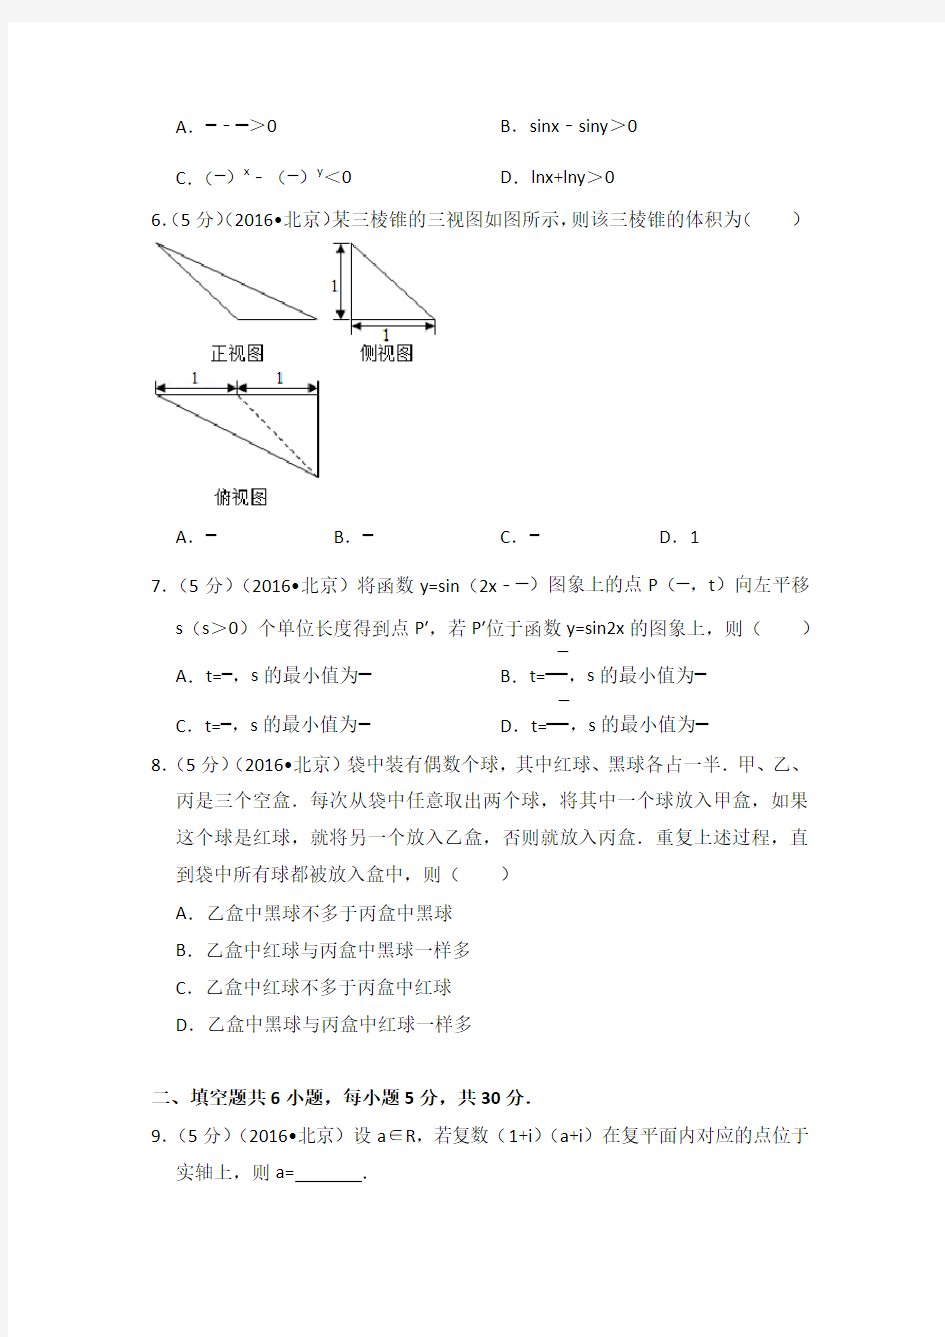 2016年北京市高考数学试卷(理科)学生版